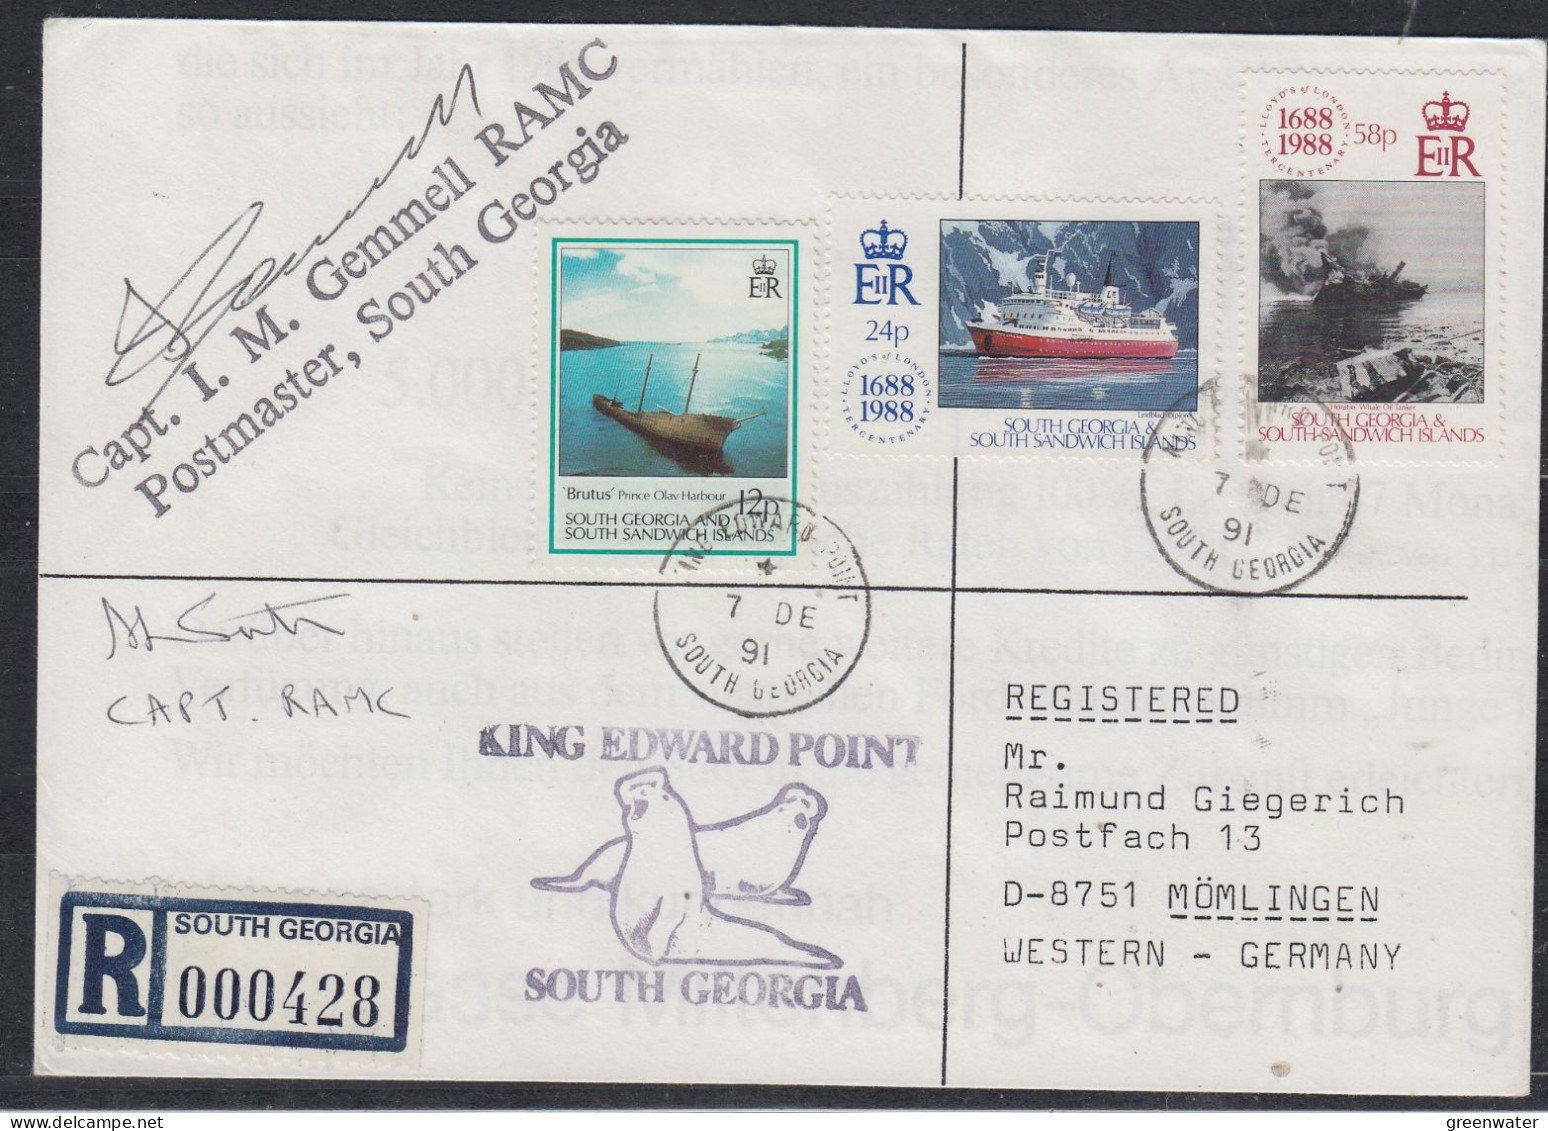 South Georgia & South Sandwich Islands 1991 Registered Cover 2  Signatures  Ca 7 DE 1991 (FG178) - Zuid-Georgia